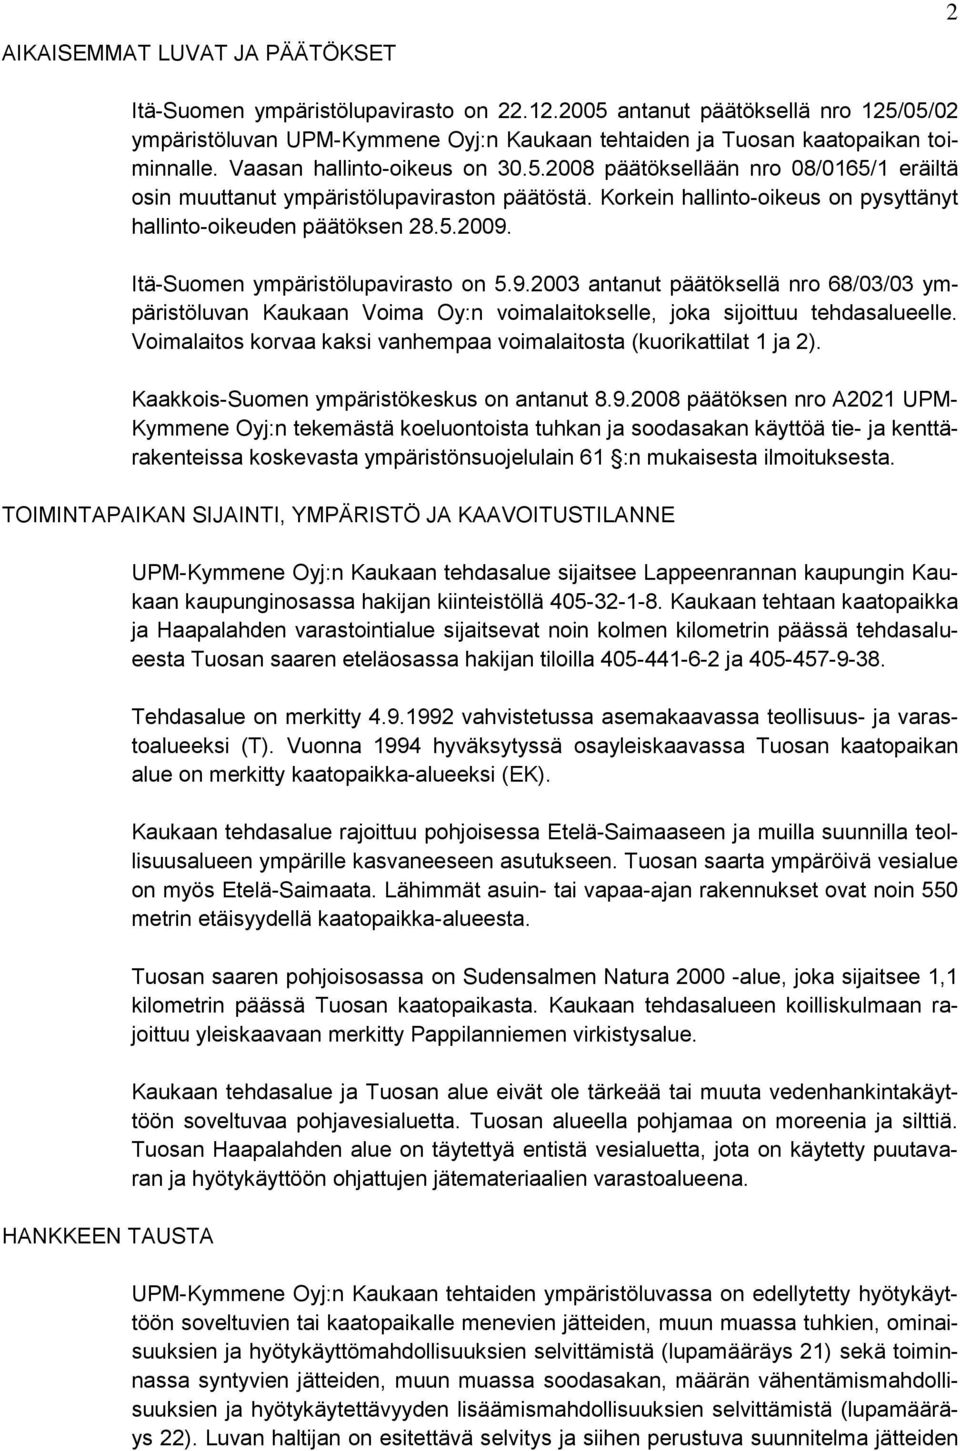 Itä-Suomen ympäristölupavirasto on 5.9.2003 antanut päätöksellä nro 68/03/03 ympäristöluvan Kaukaan Voima Oy:n voimalaitokselle, joka sijoittuu tehdasalueelle.